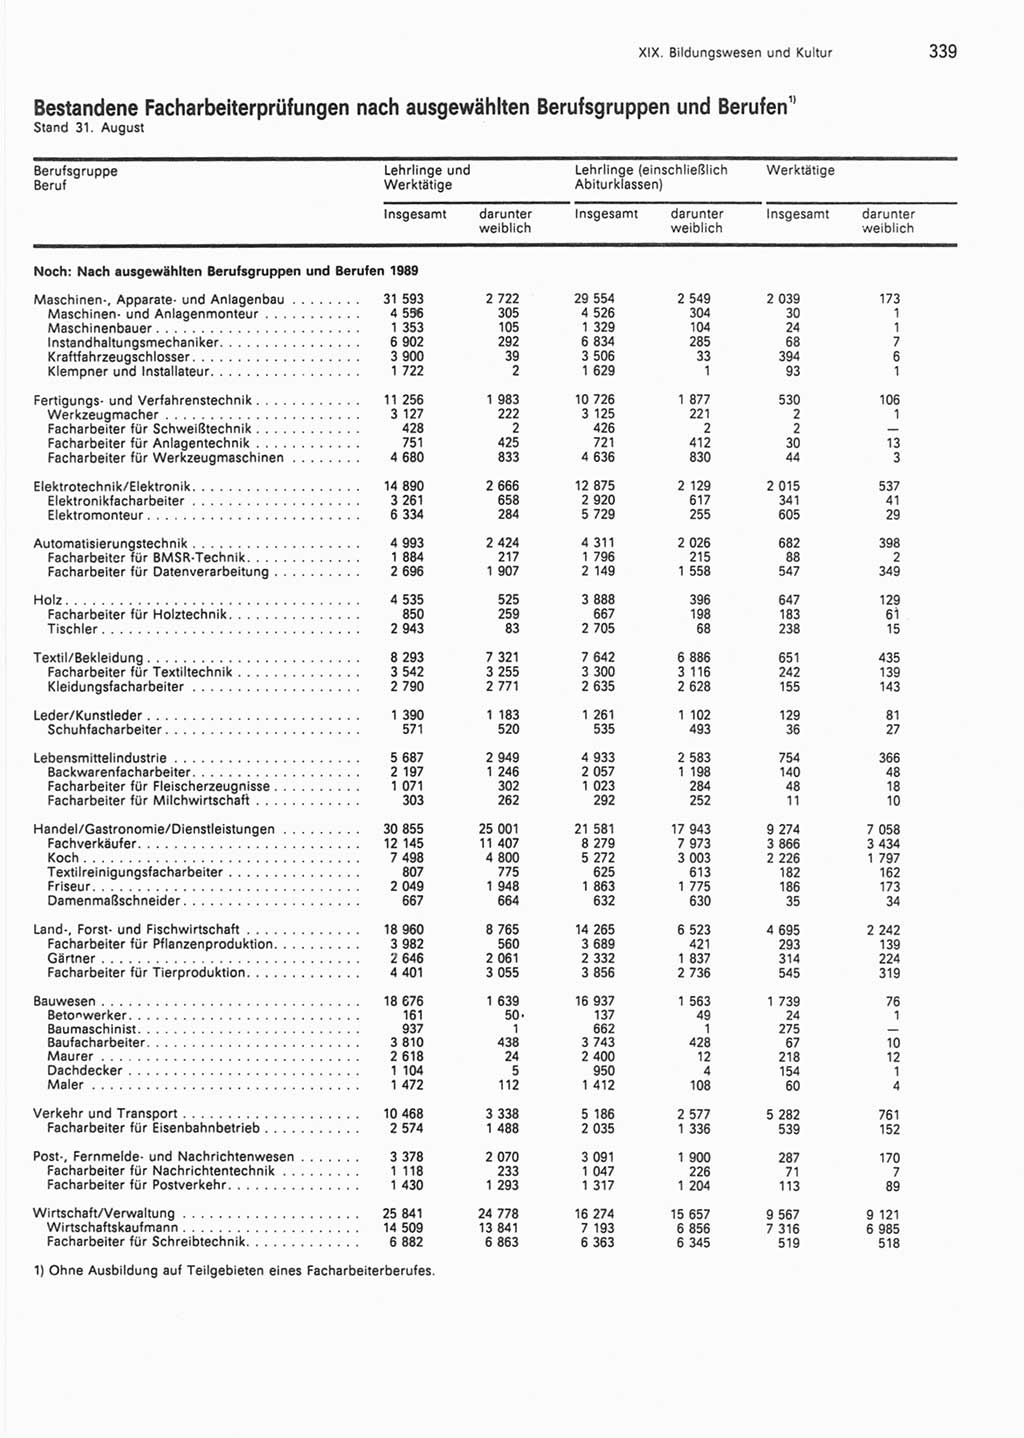 Statistisches Jahrbuch der Deutschen Demokratischen Republik (DDR) 1990, Seite 339 (Stat. Jb. DDR 1990, S. 339)